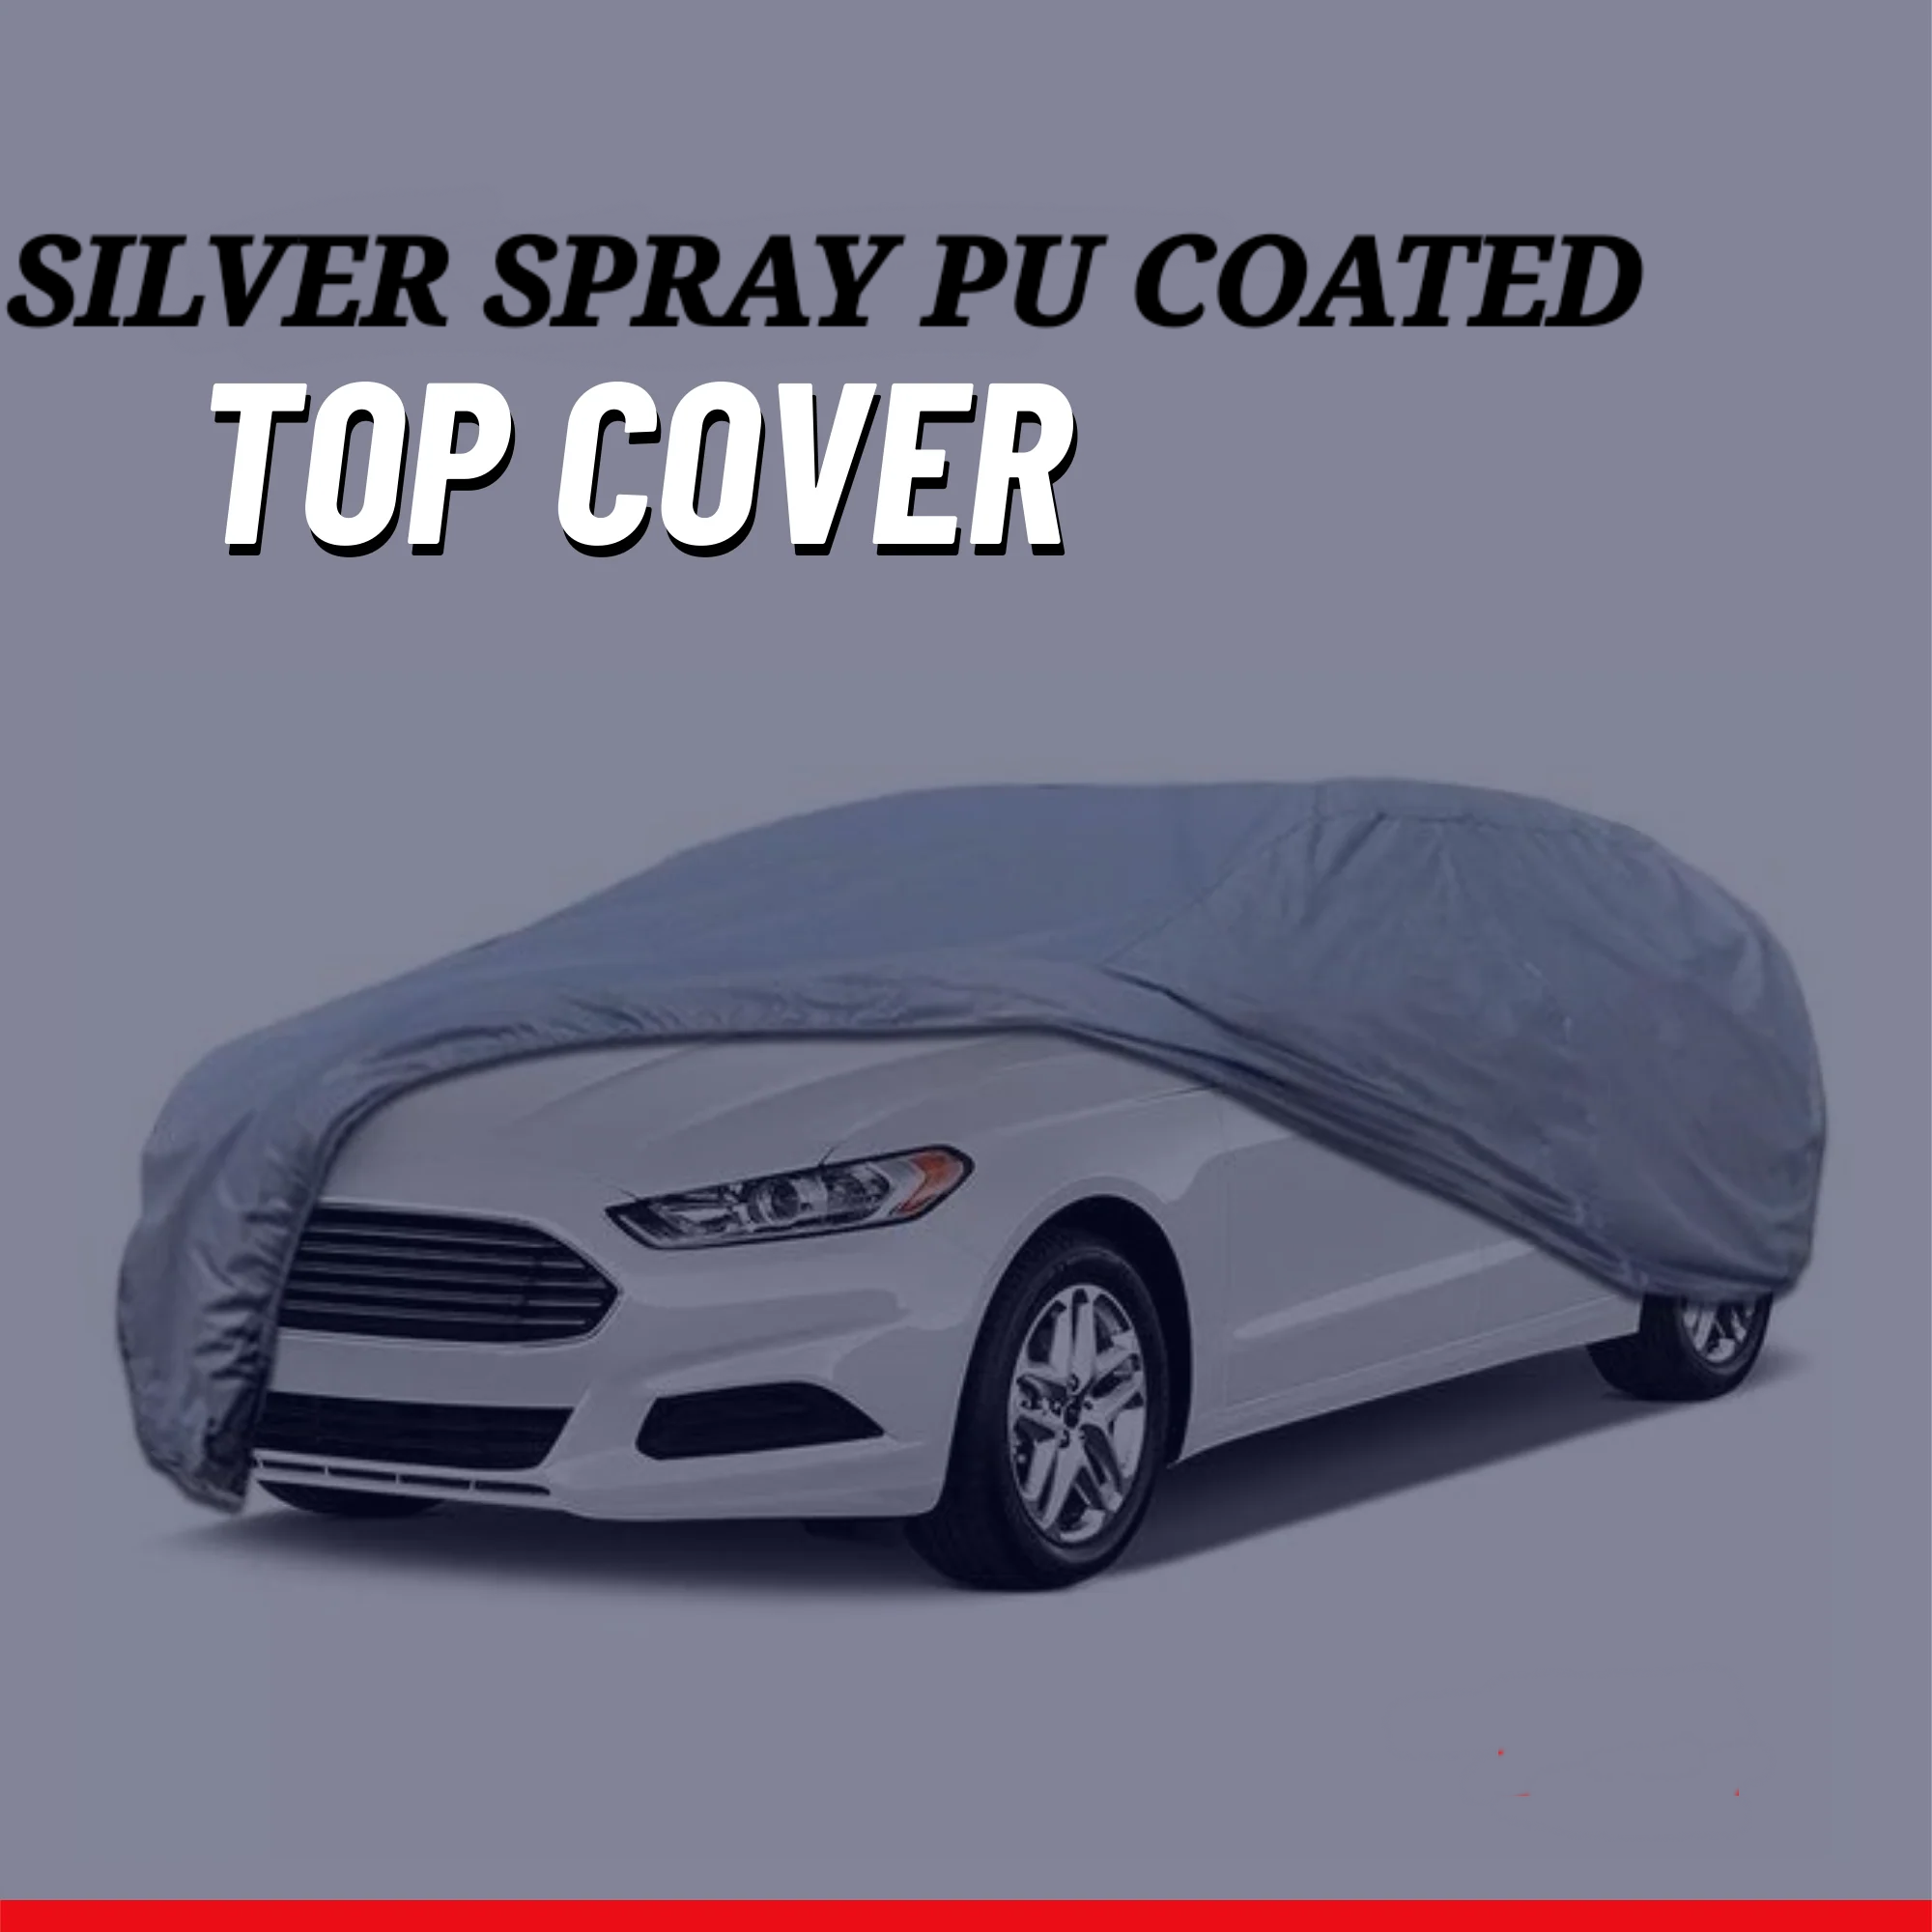 DFSK Glory 2018-2023 Car Top Cover - Waterproof & Dustproof Silver Spray Coated + Free Bag